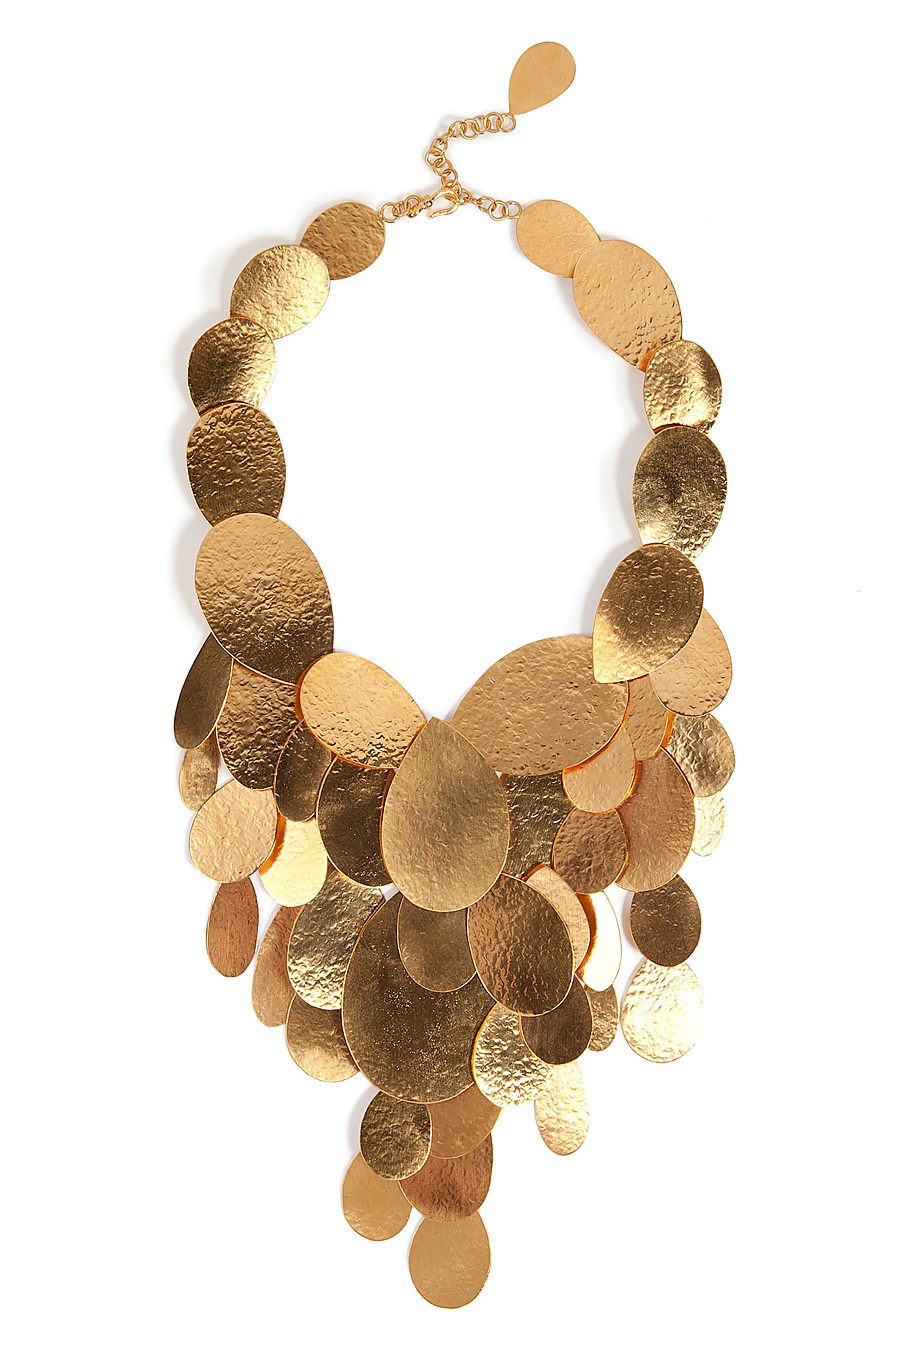 Hammered gold-plate teardrops gilded necklace Herve van der Straeten